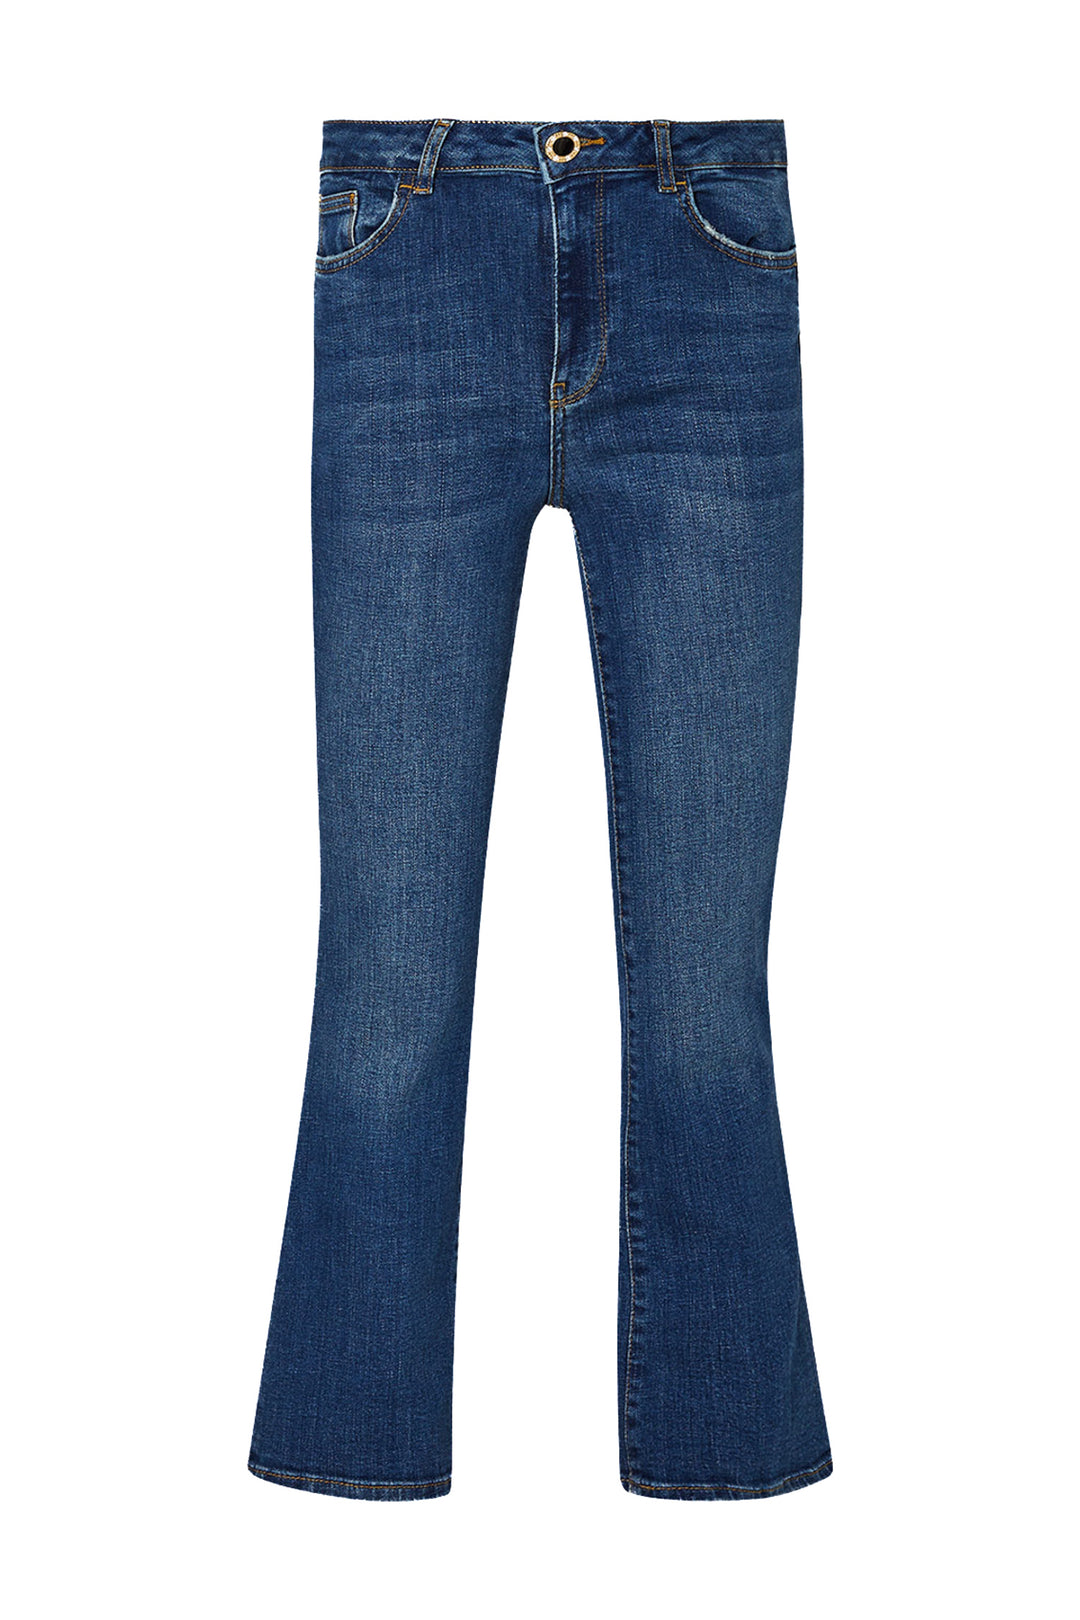 LIU JO Jeans bootcut ecosostenibili in denim di cotone stretch lavaggio used - Mancinelli 1954